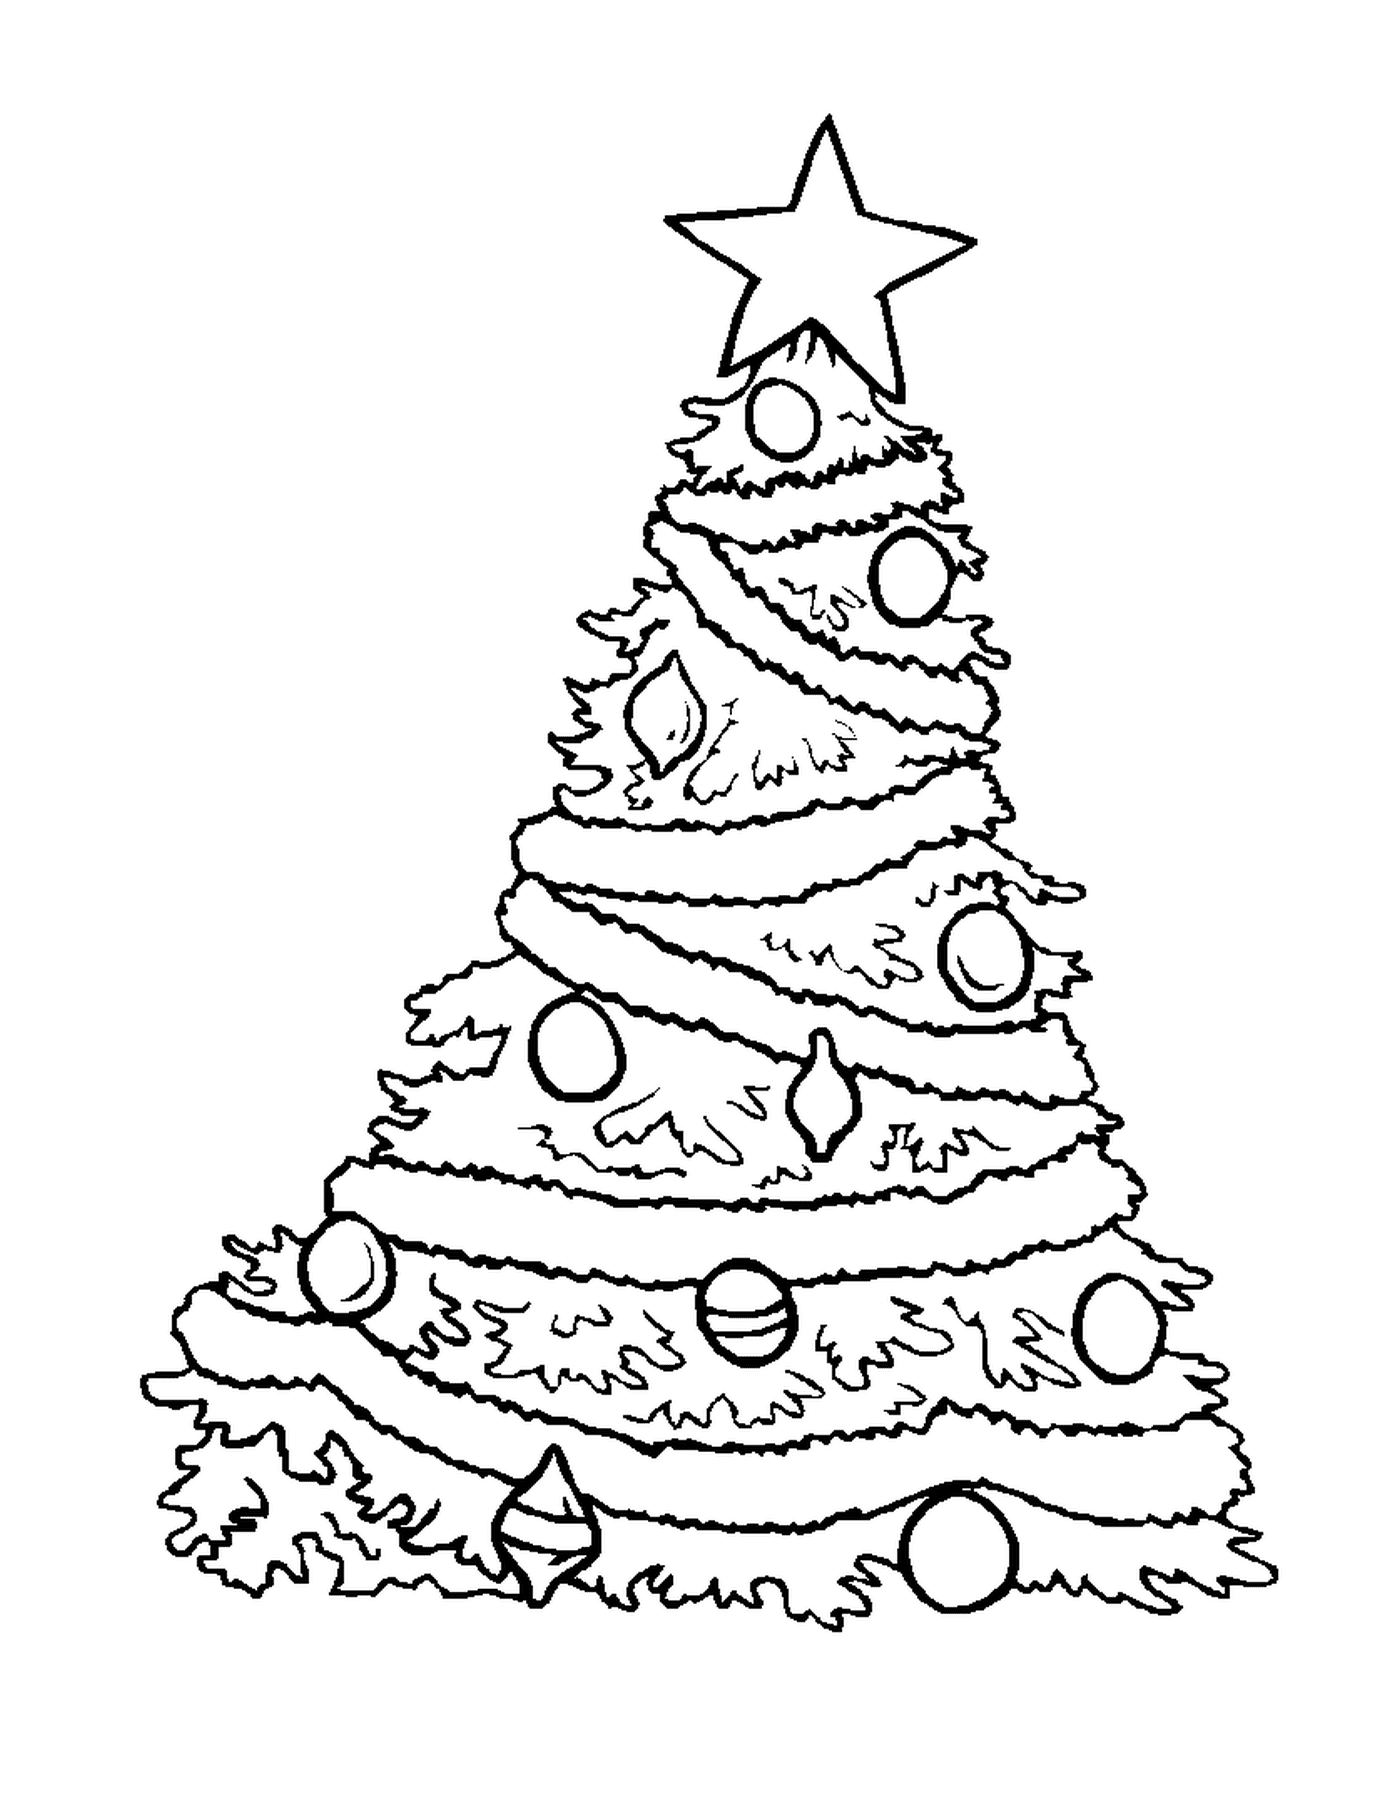  Ein Weihnachtsbaum mit Ornamenten verziert 